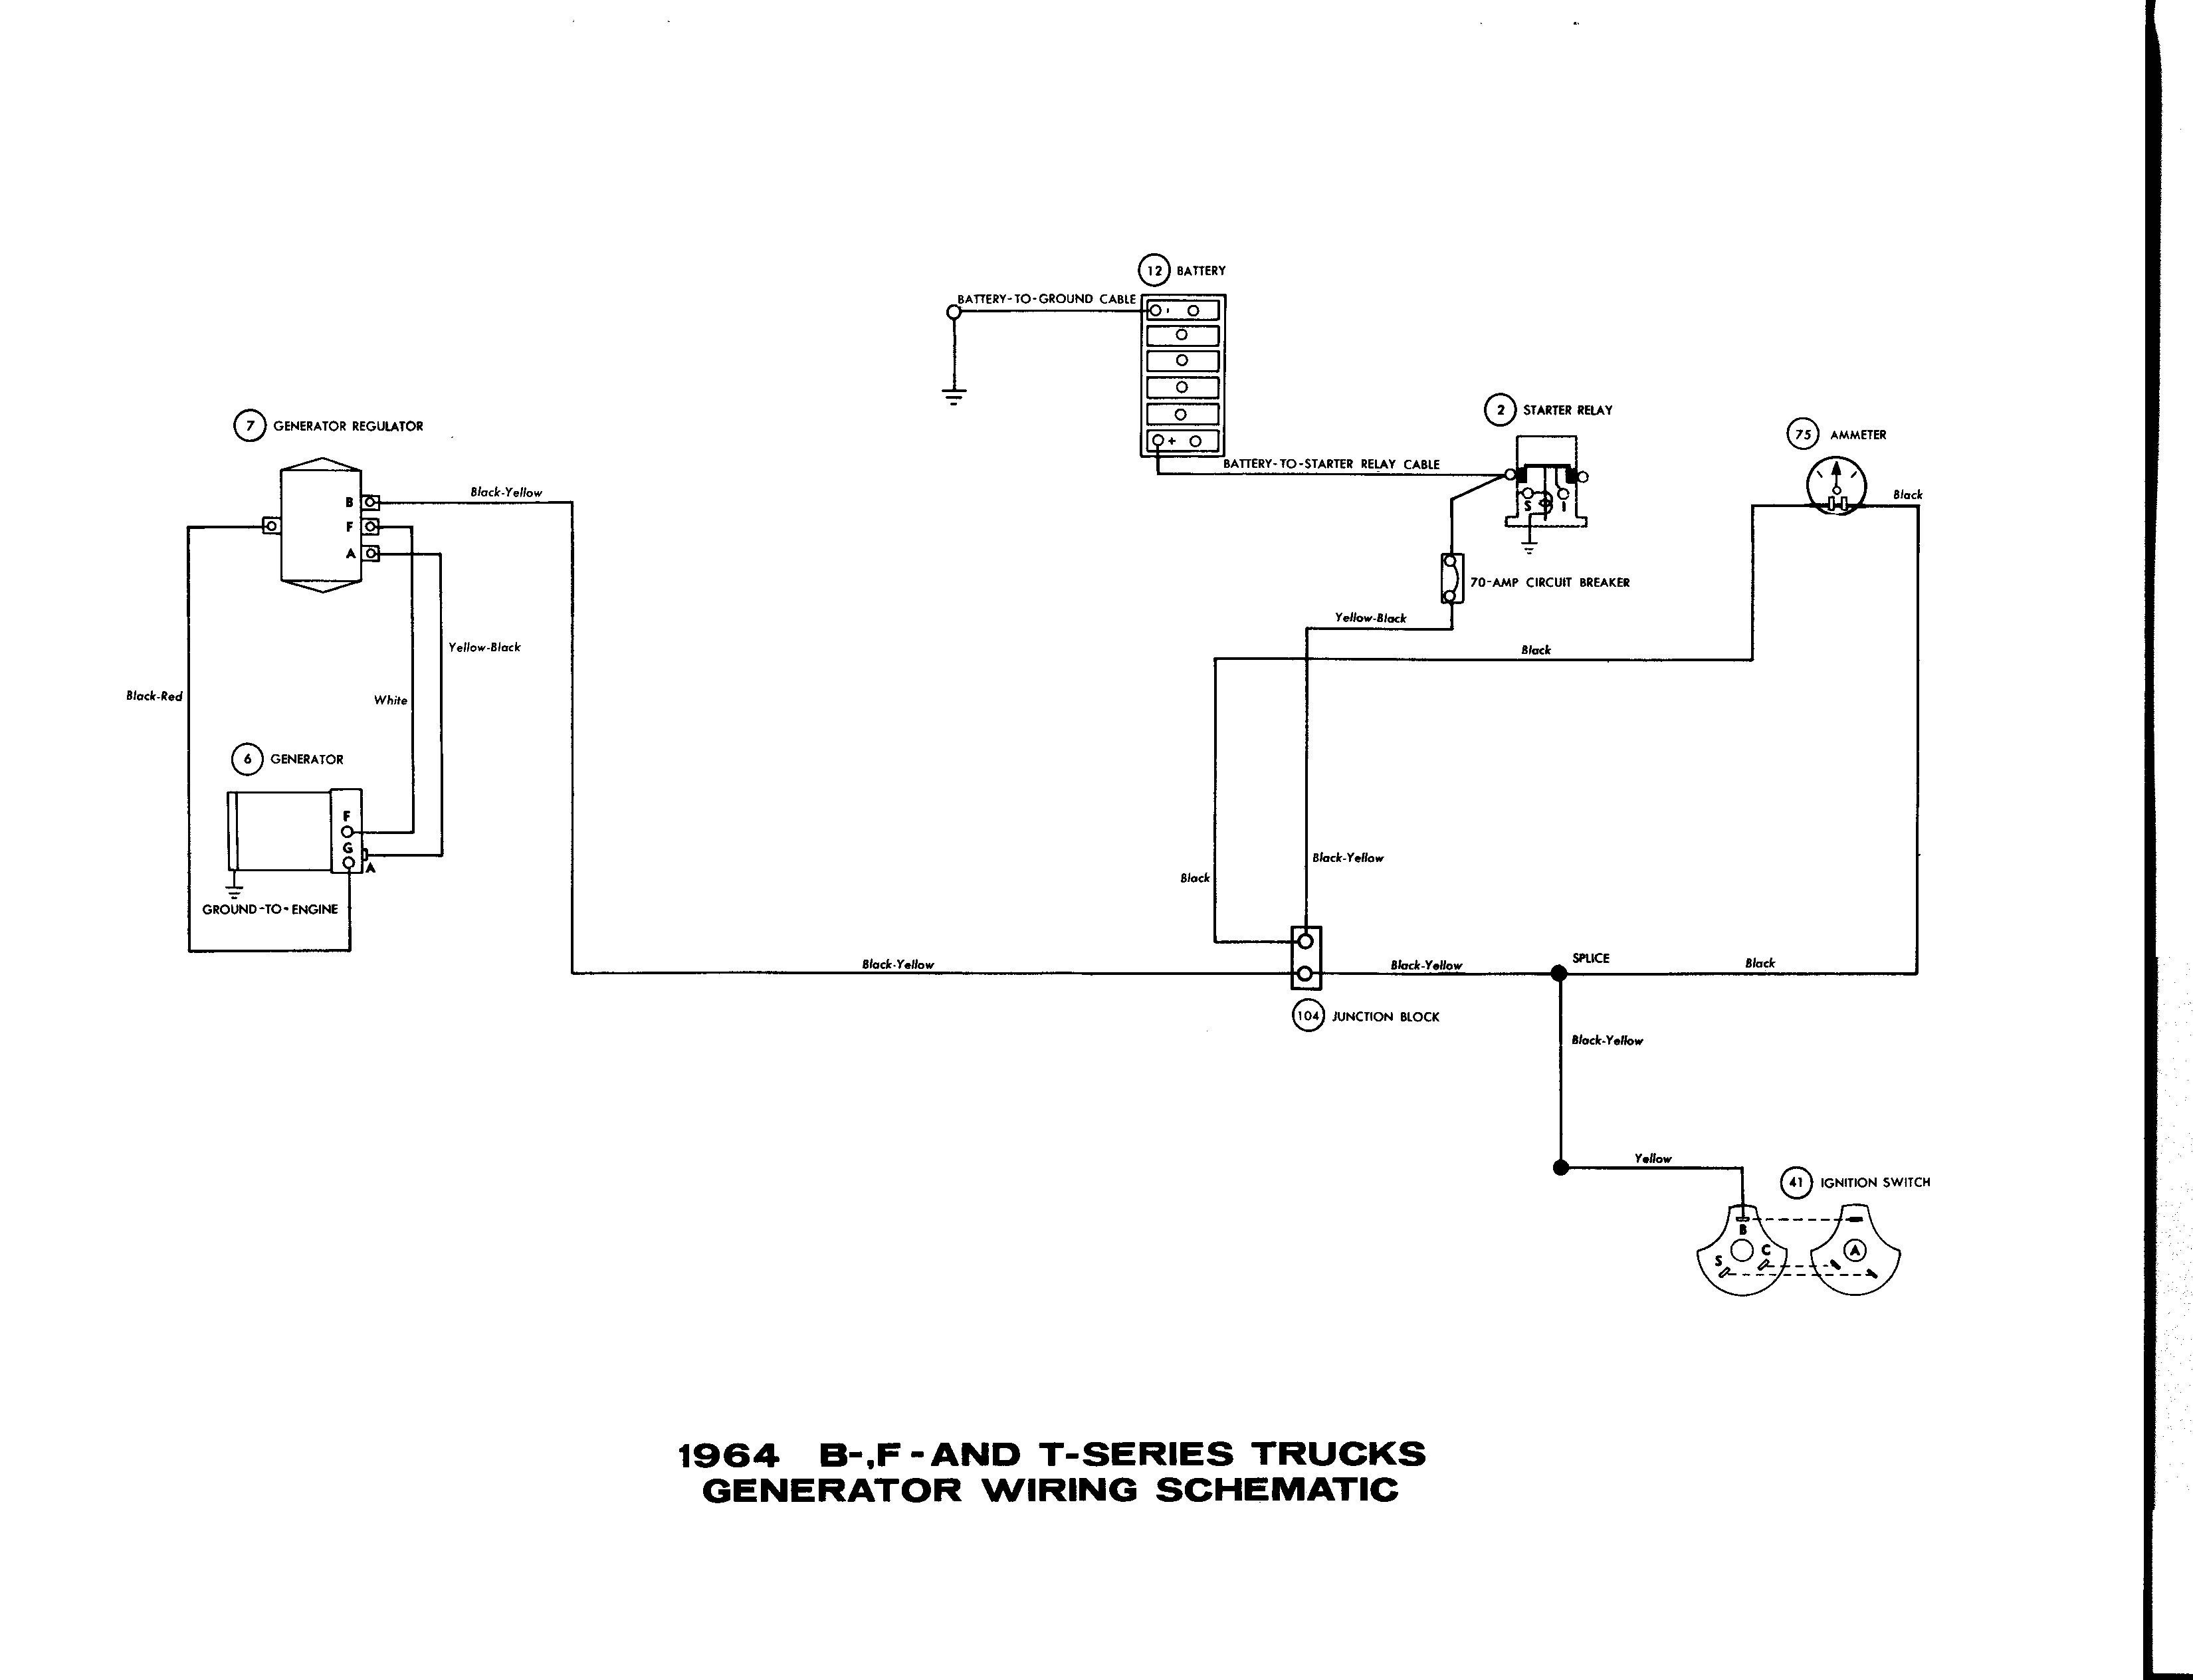 Wiring Diagram for Holden Alternator Fresh Exelent ford Tractor Alternator Wiring Diagram Inspiration Simple